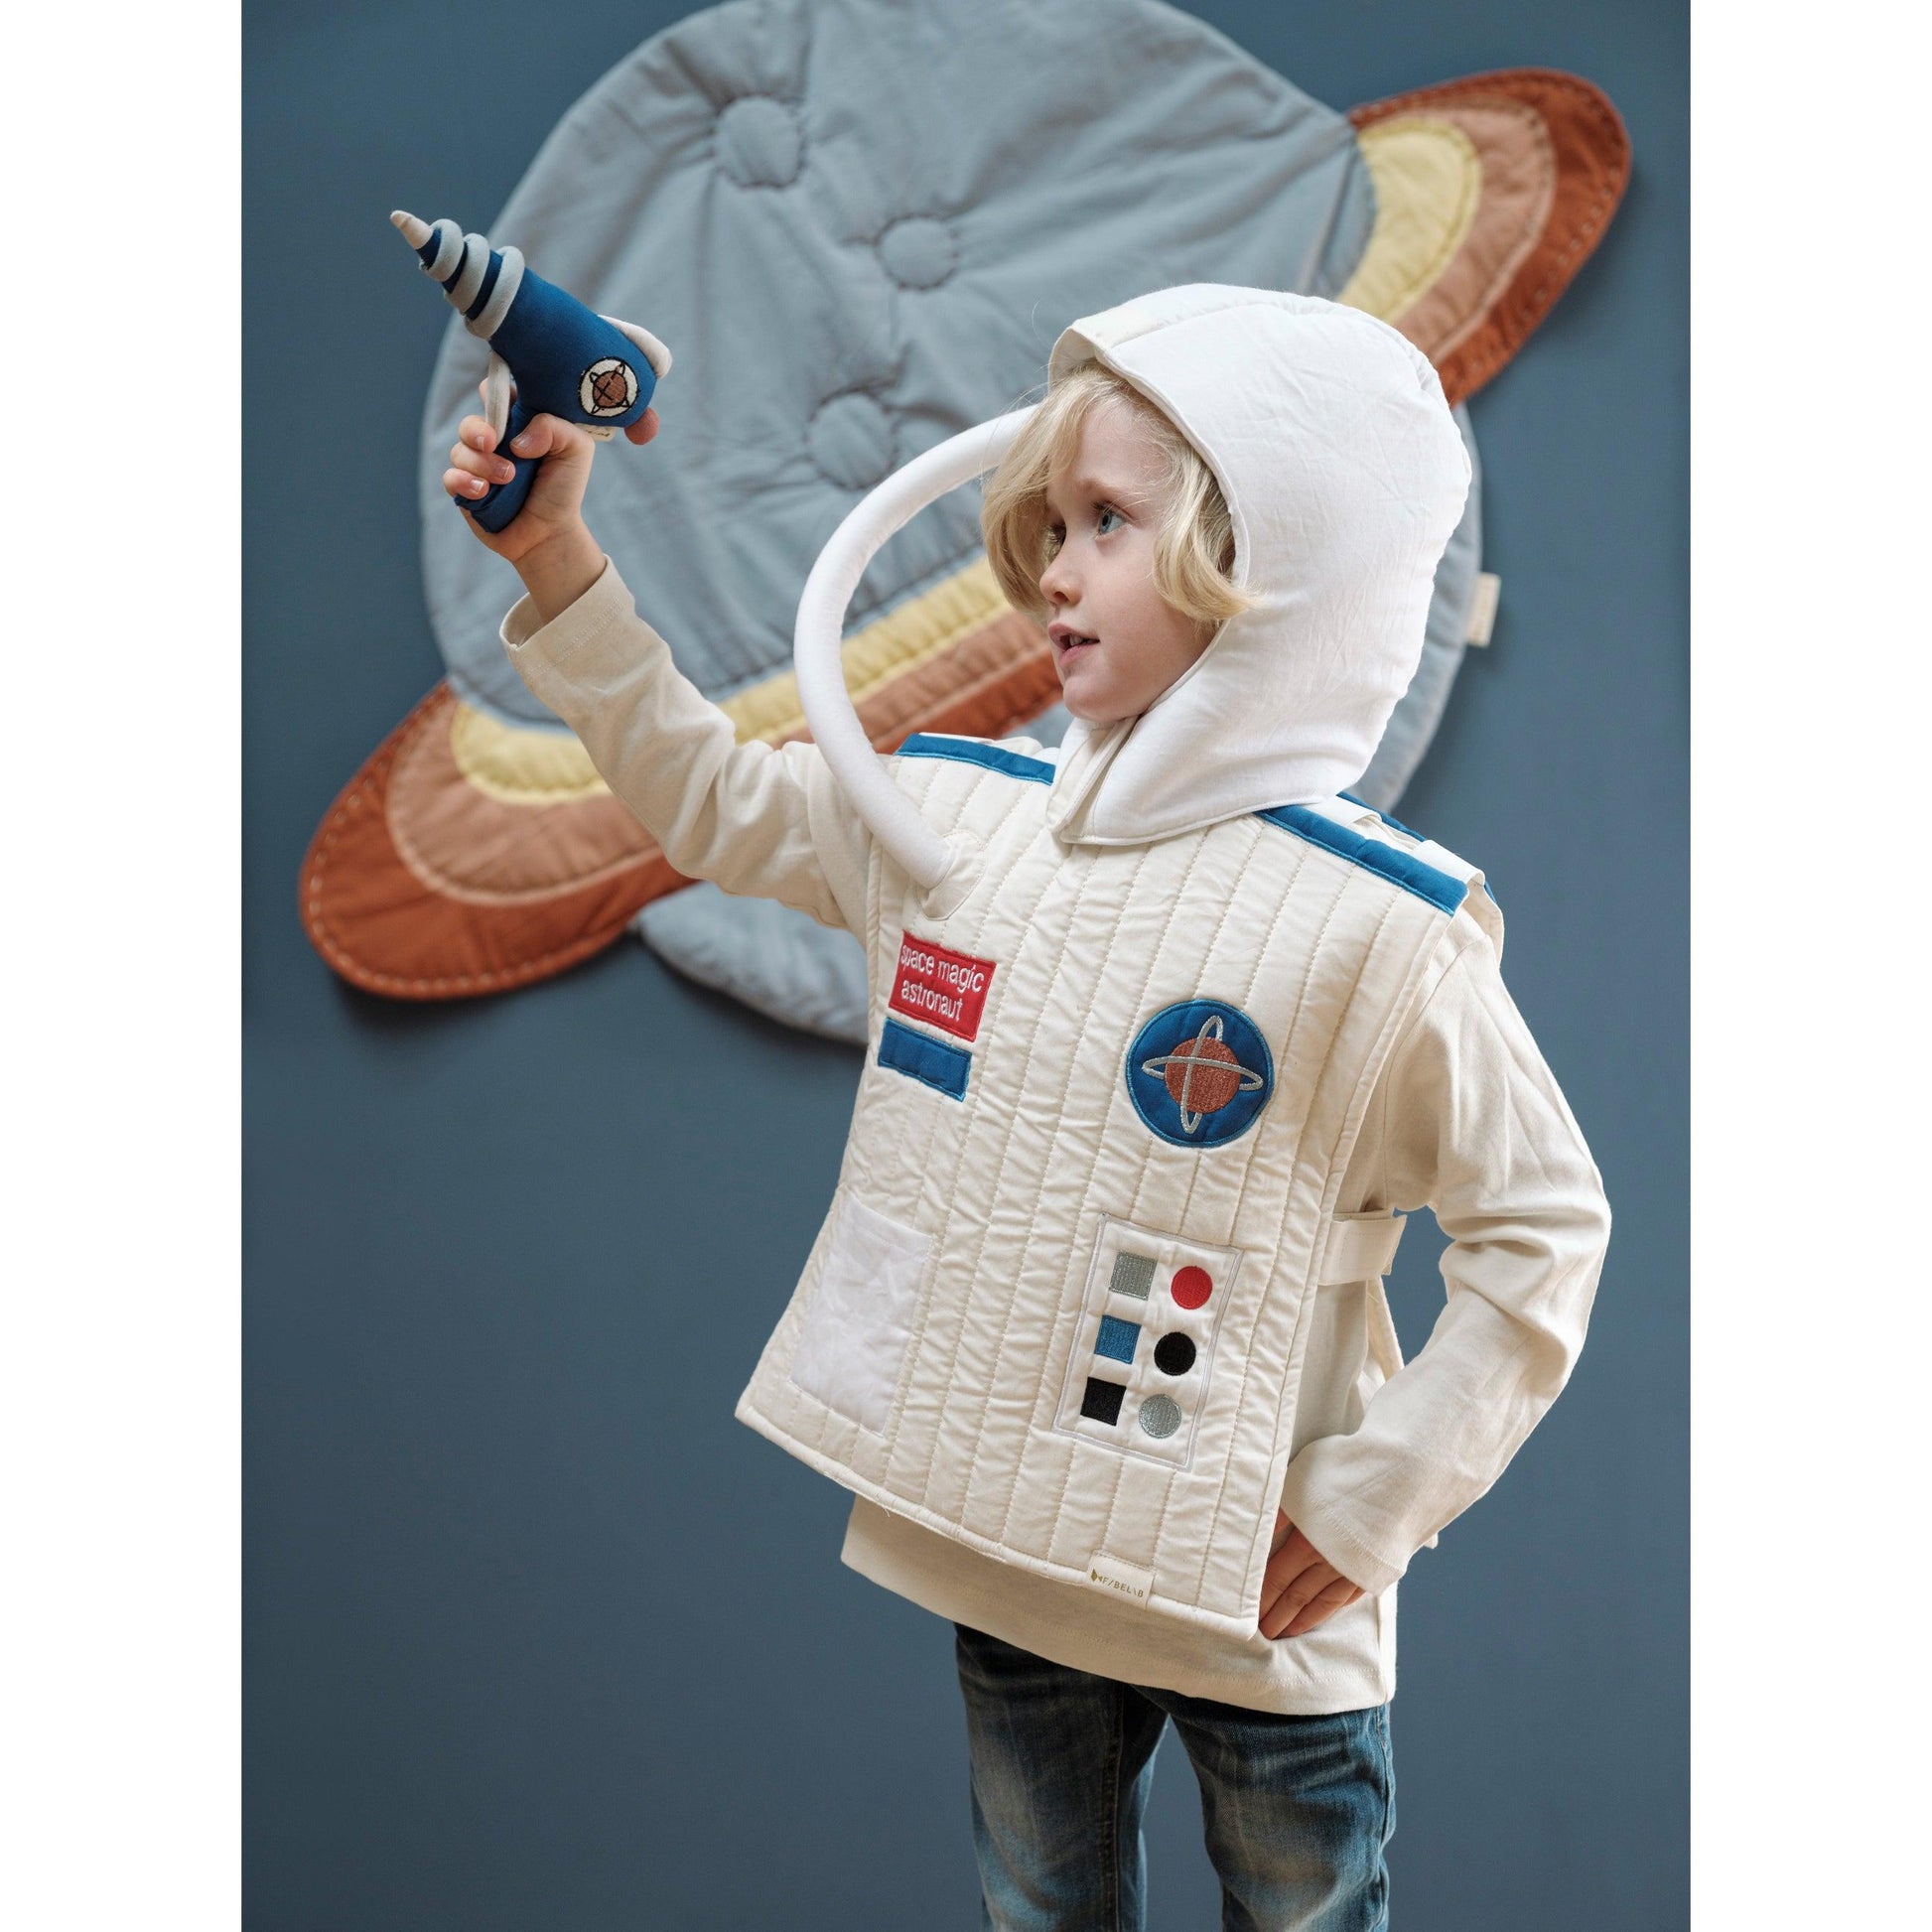 Kinderkostüm - Astronaut mit Weste und Helm - Nook' d' Mel - Kinder Concept Store